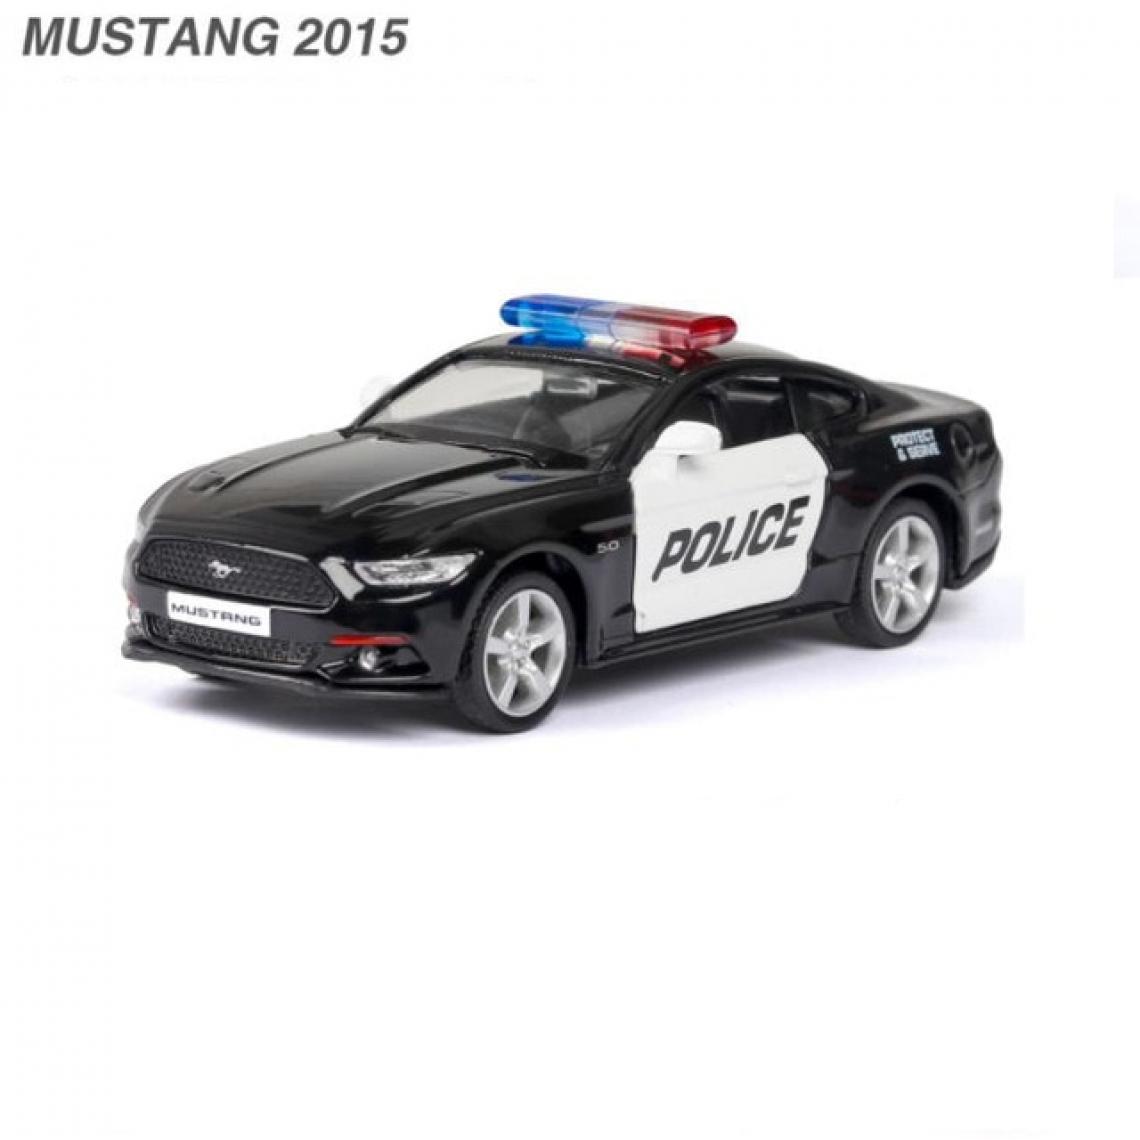 Universal - Nouveauté 1: 36 Dodge Mustang F150 Police Alliage Modèle Voiture jouet moulée sous pression Voiture jouet pour enfants Jouet éducatif Cadeau Jouet pour garçons | Voiture jouet moulée sous pression(Le noir) - Voitures